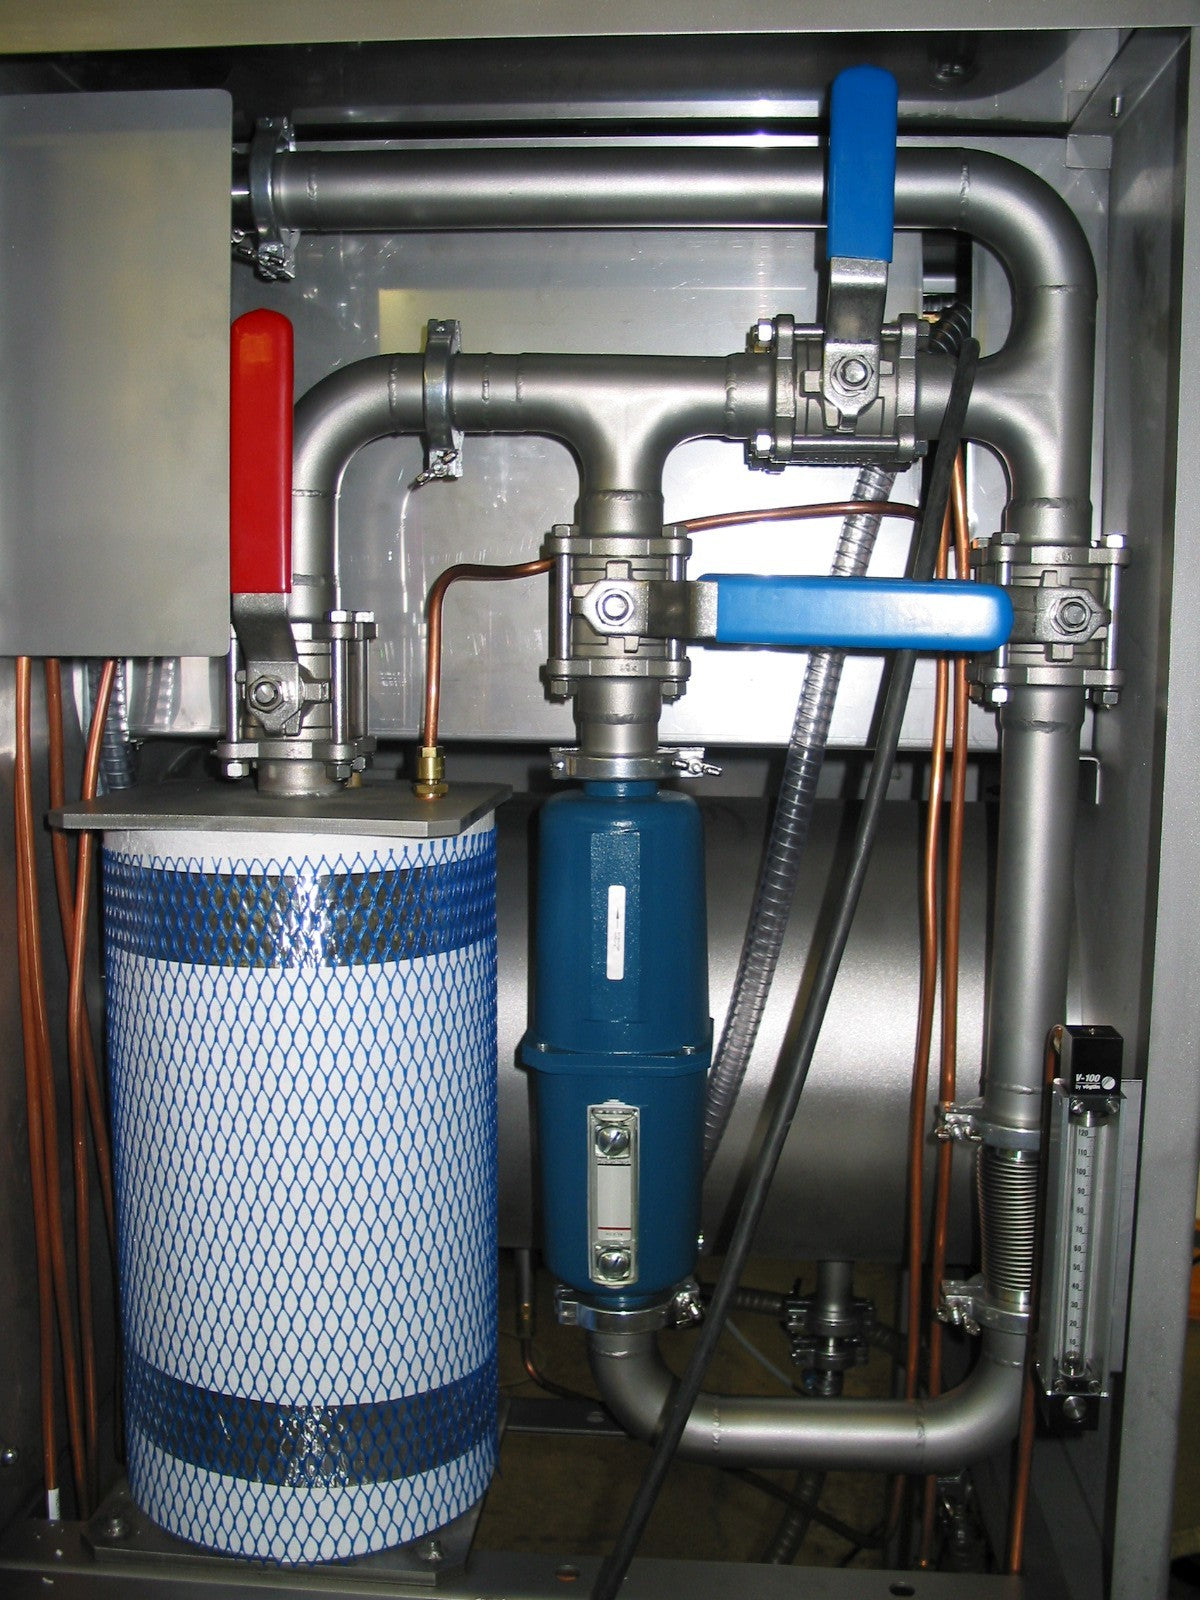 Épuration des gaz avec 1 adsorbeur et avec adsorbeur de solvants et commande de rinçage intégrée avec régulation de pression